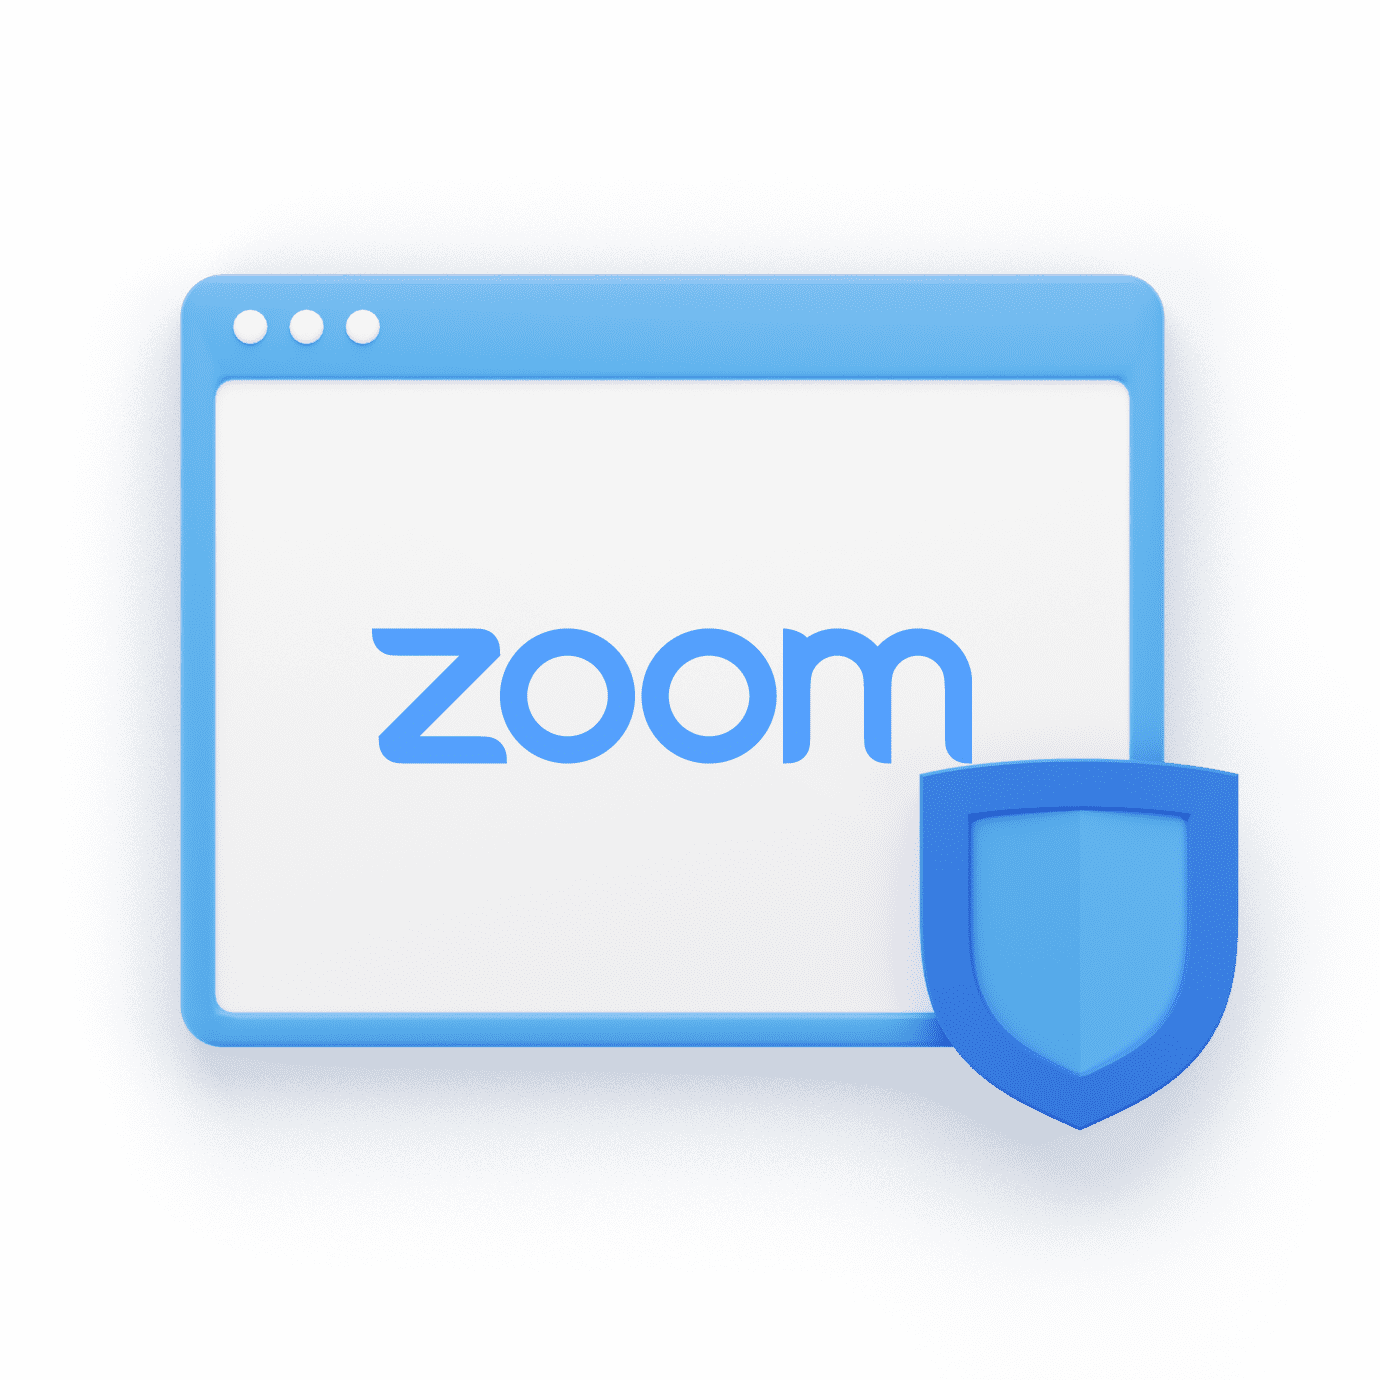 Zoom logo with WWPass Shield